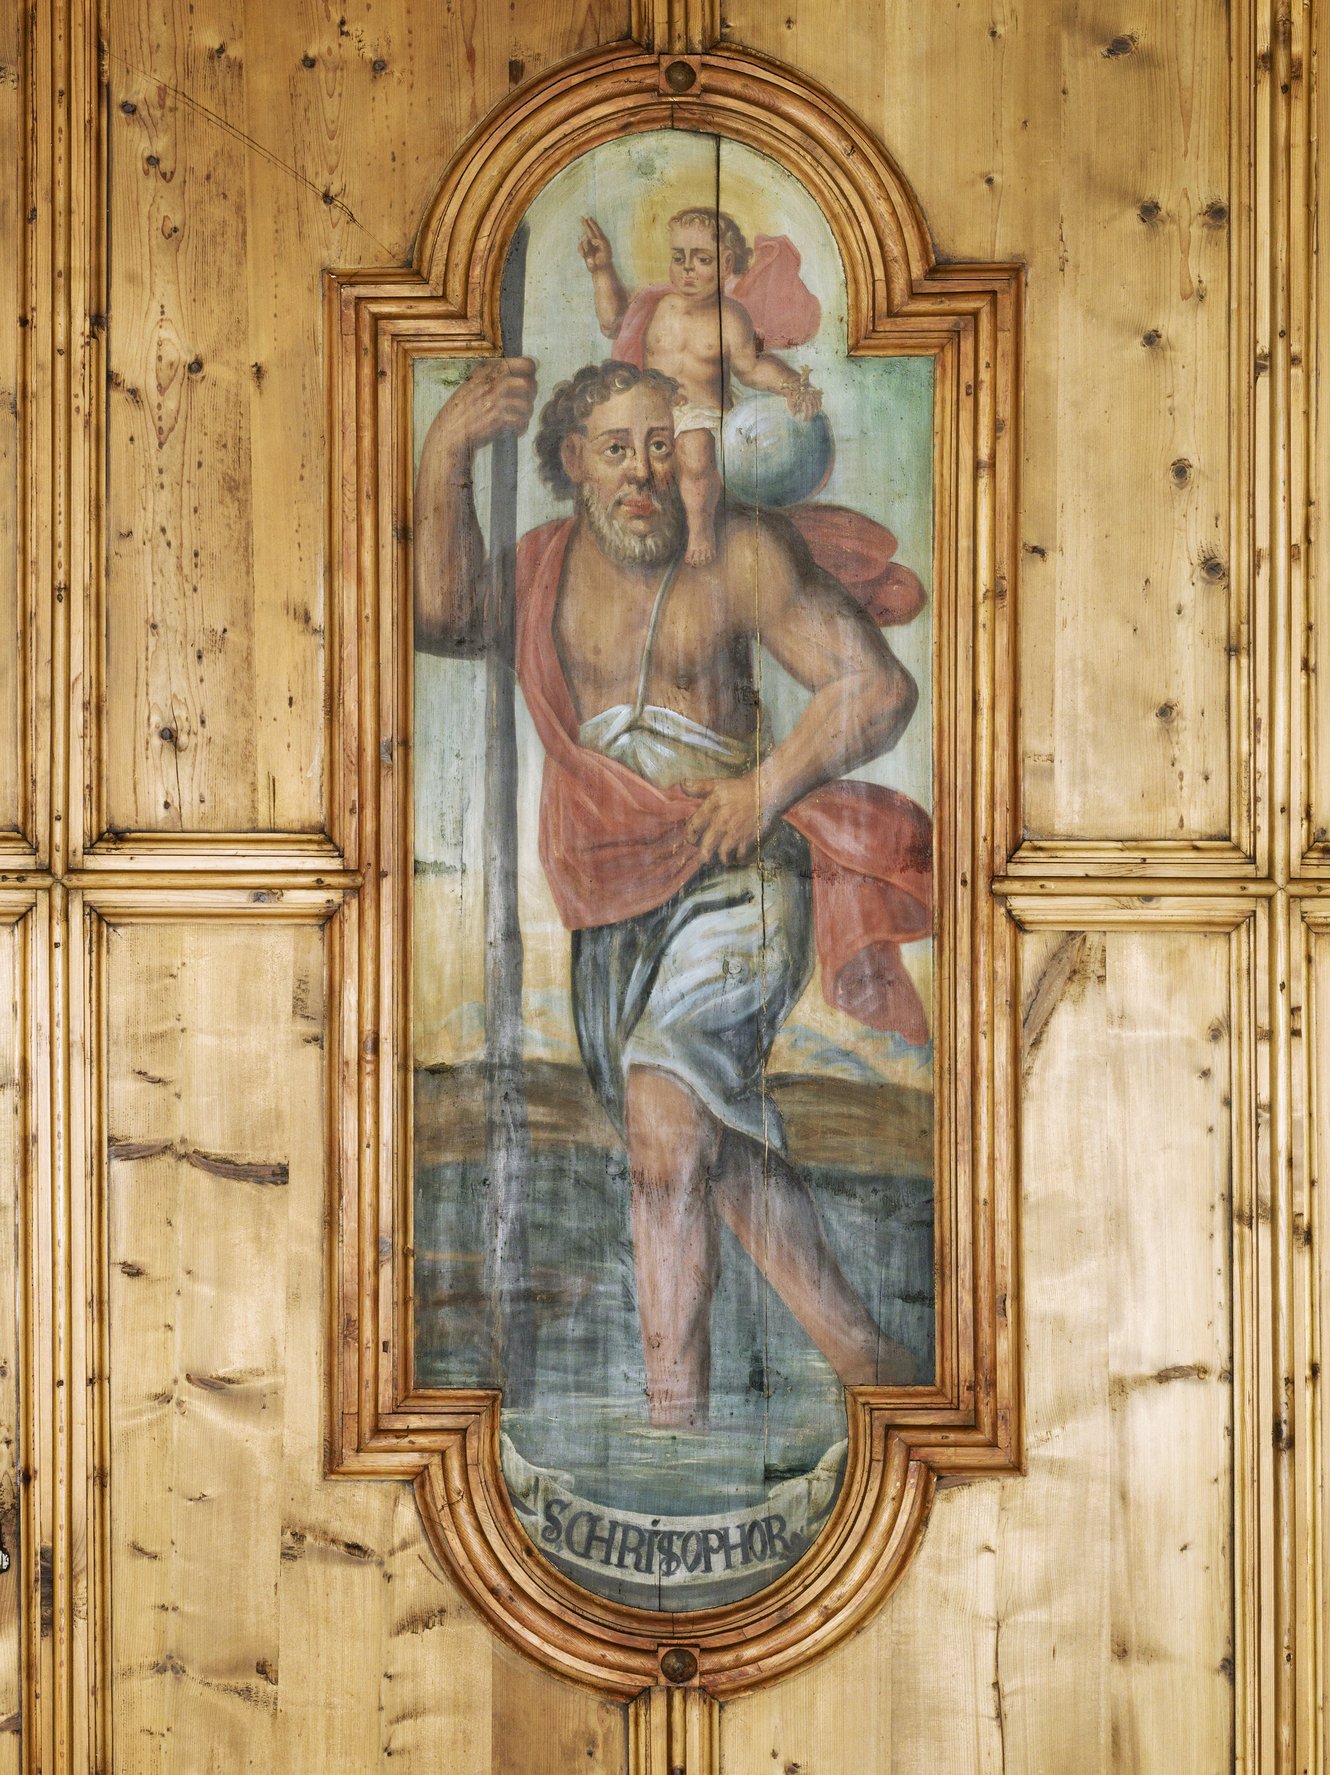 Hl. Christophorus, Ausschnitt aus den Vierzehn Nothelfern, Deckenbild aus der Pfarrkirche Bartholomäberg, Michael Lorünser, 1732; Foto: Dieter Petras